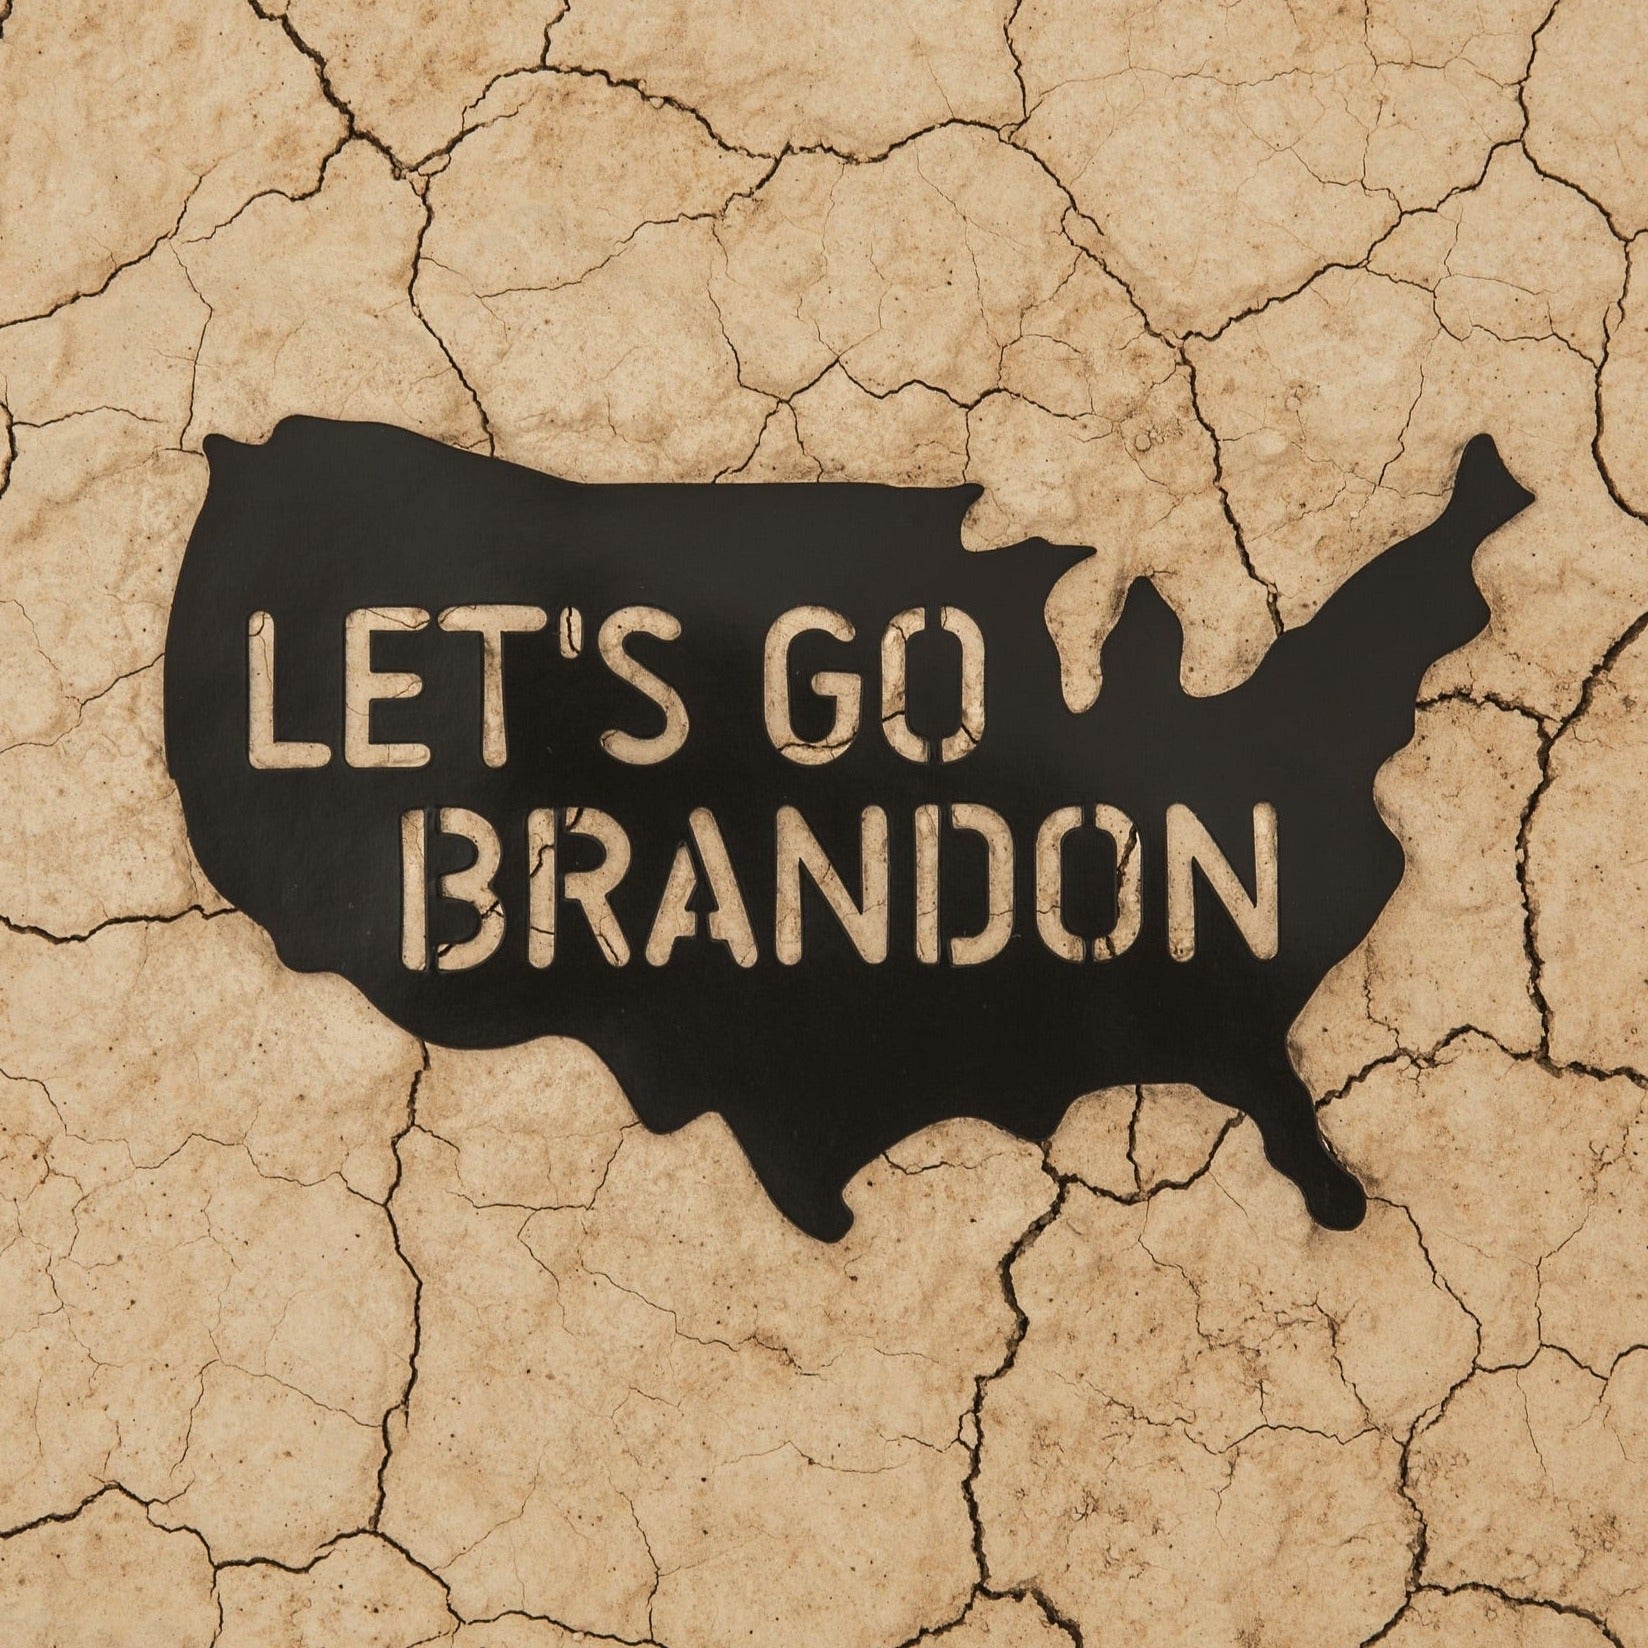 Let's go Brandon, Brands of the World™